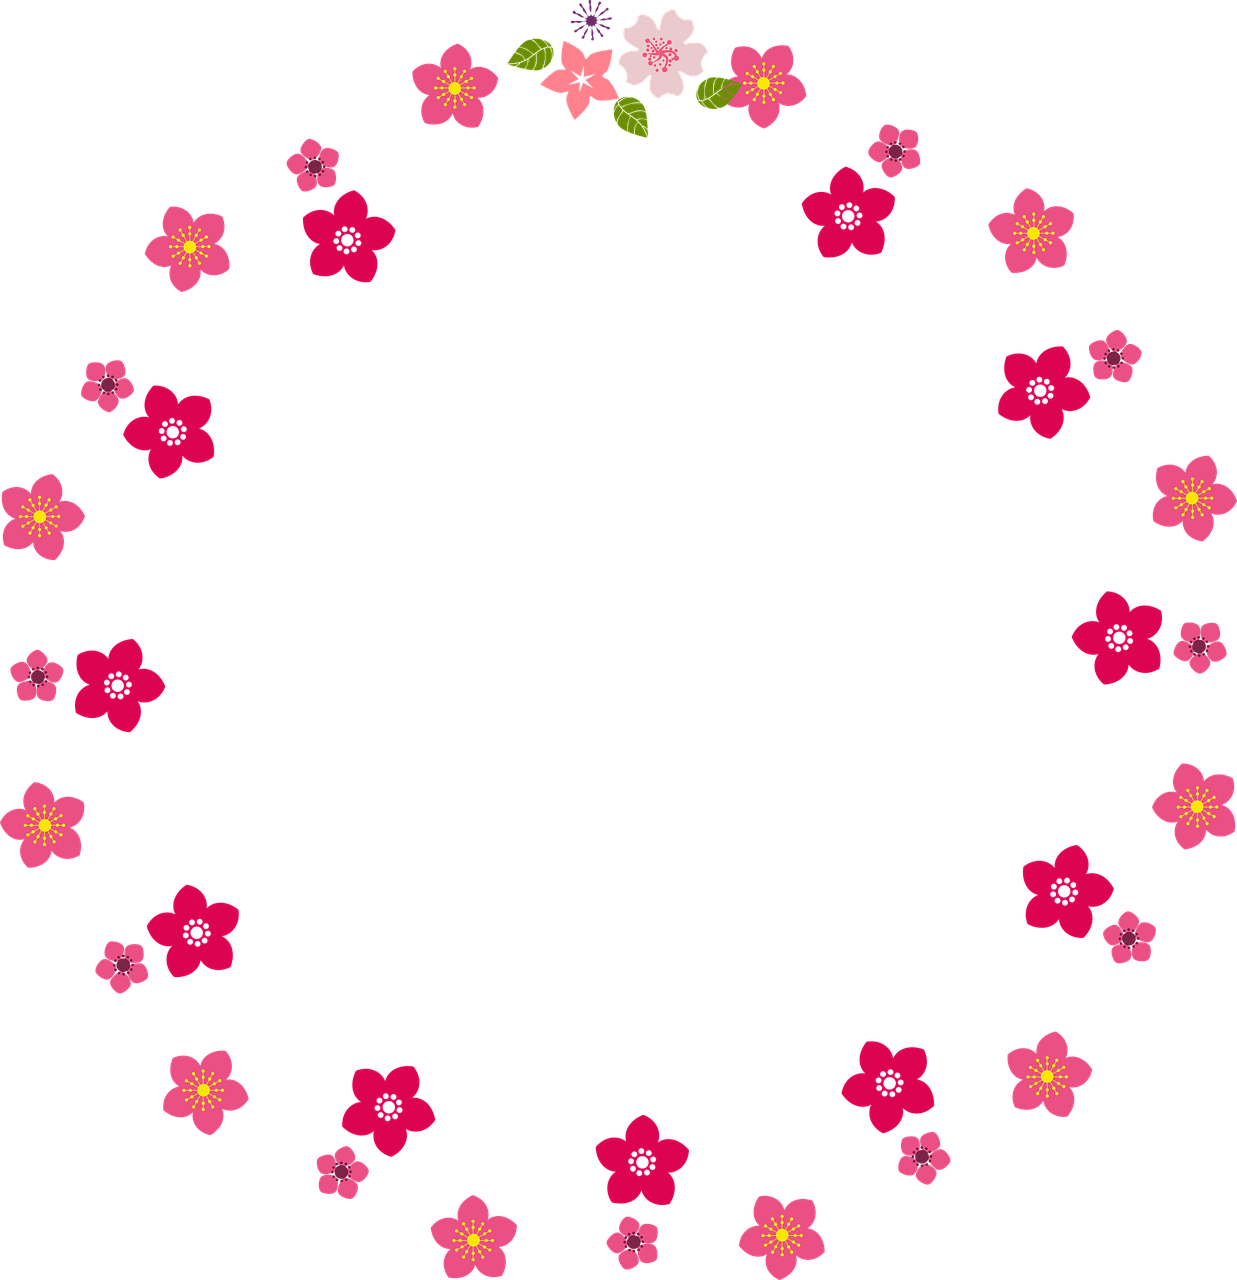 Circle Floral Border Frame PNG Image